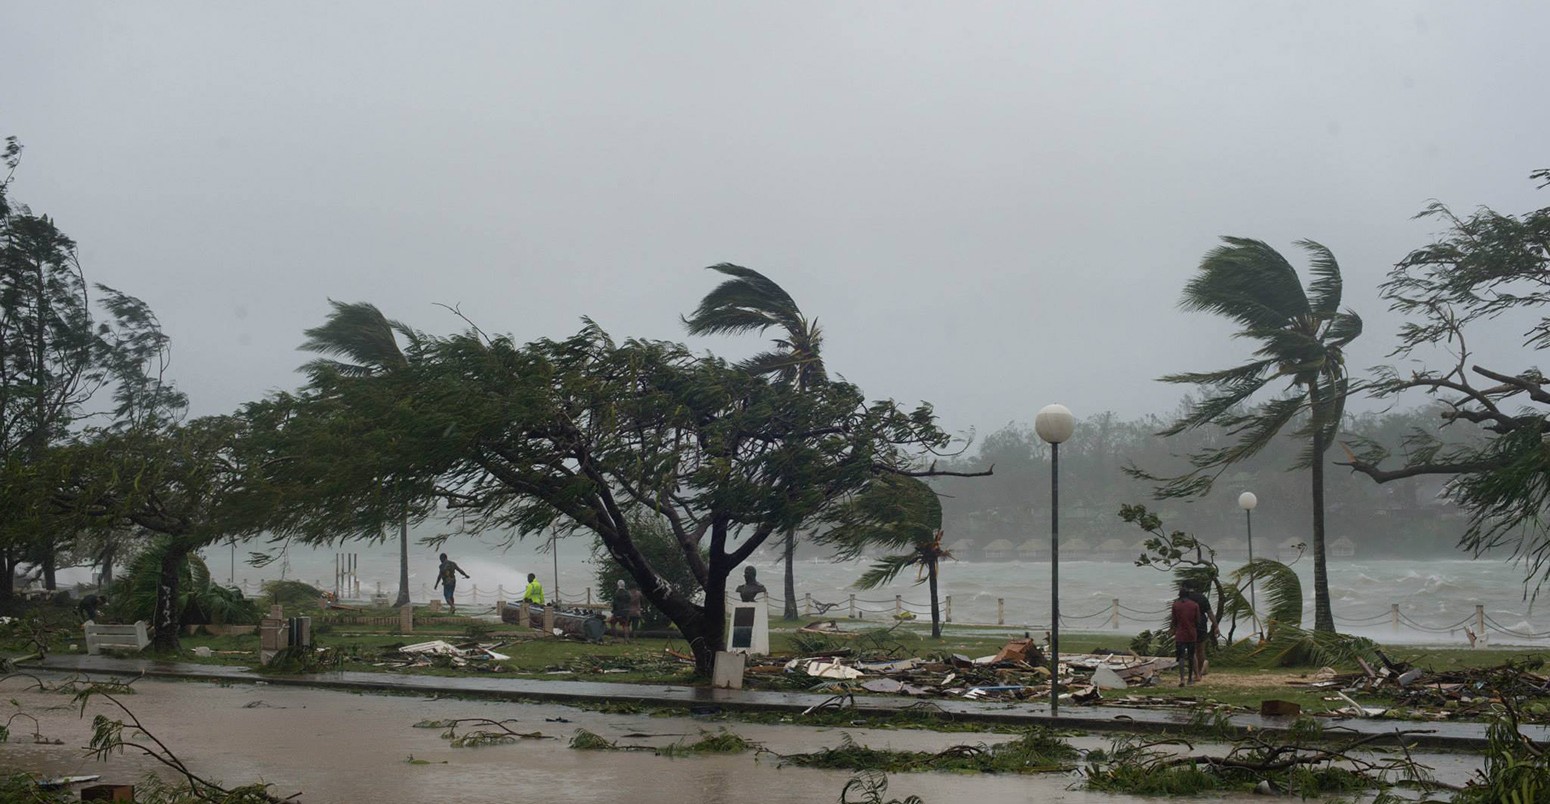 Devastation following Cyclone Pam.